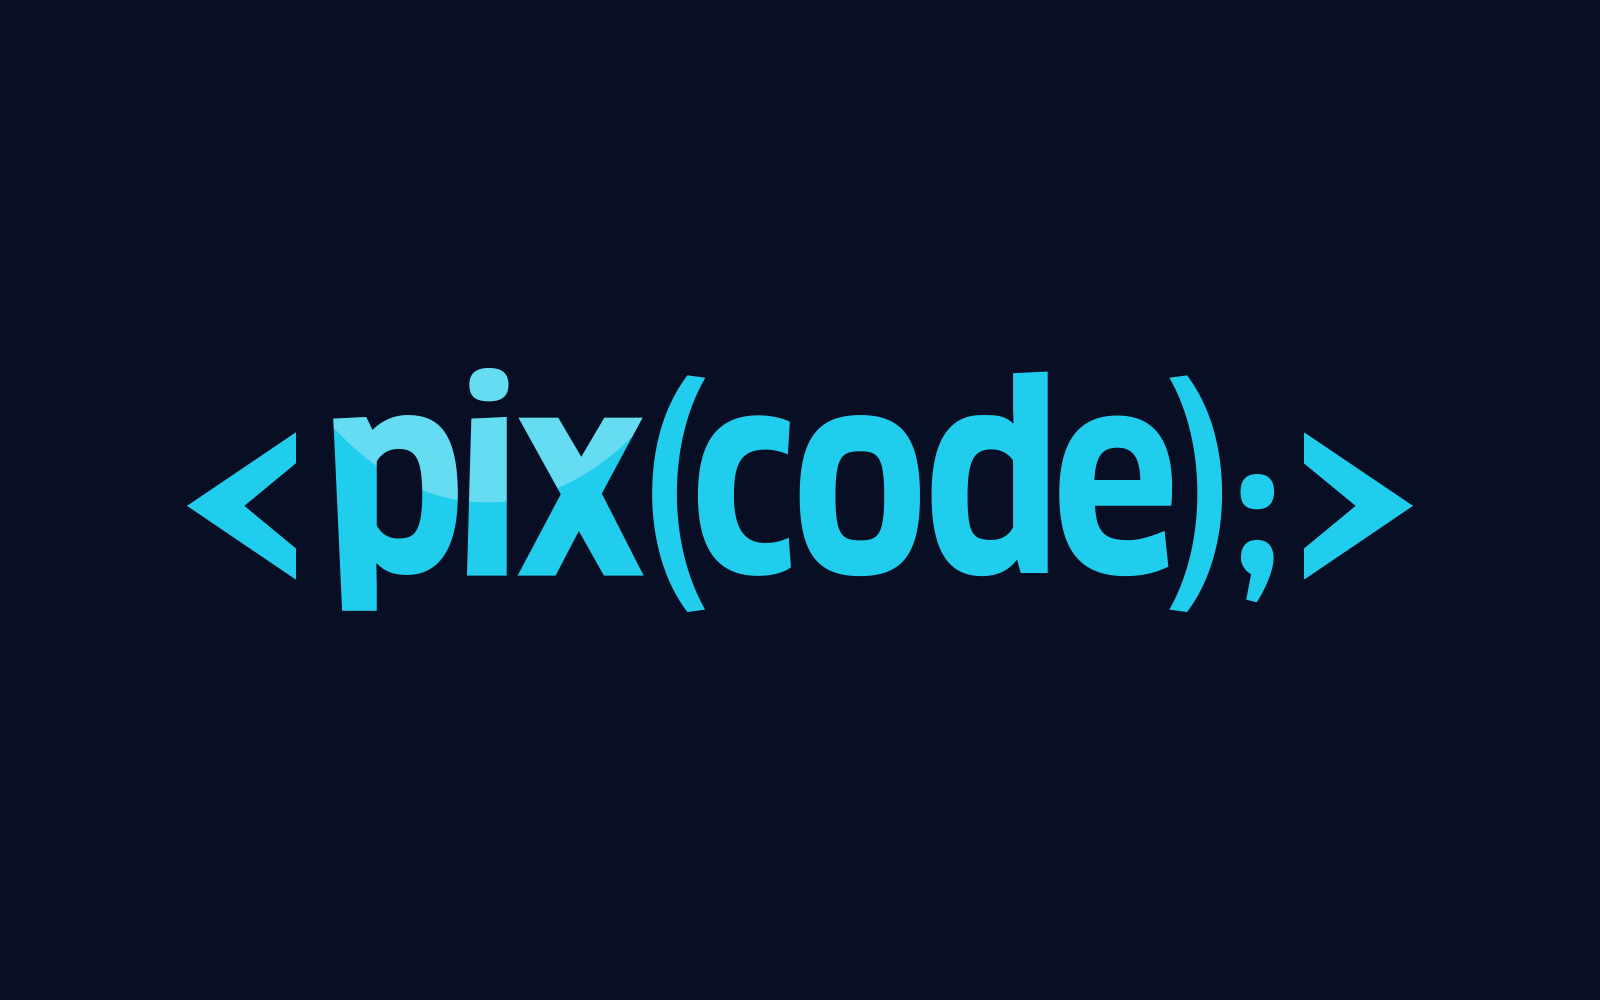 (c) Pixcode.es